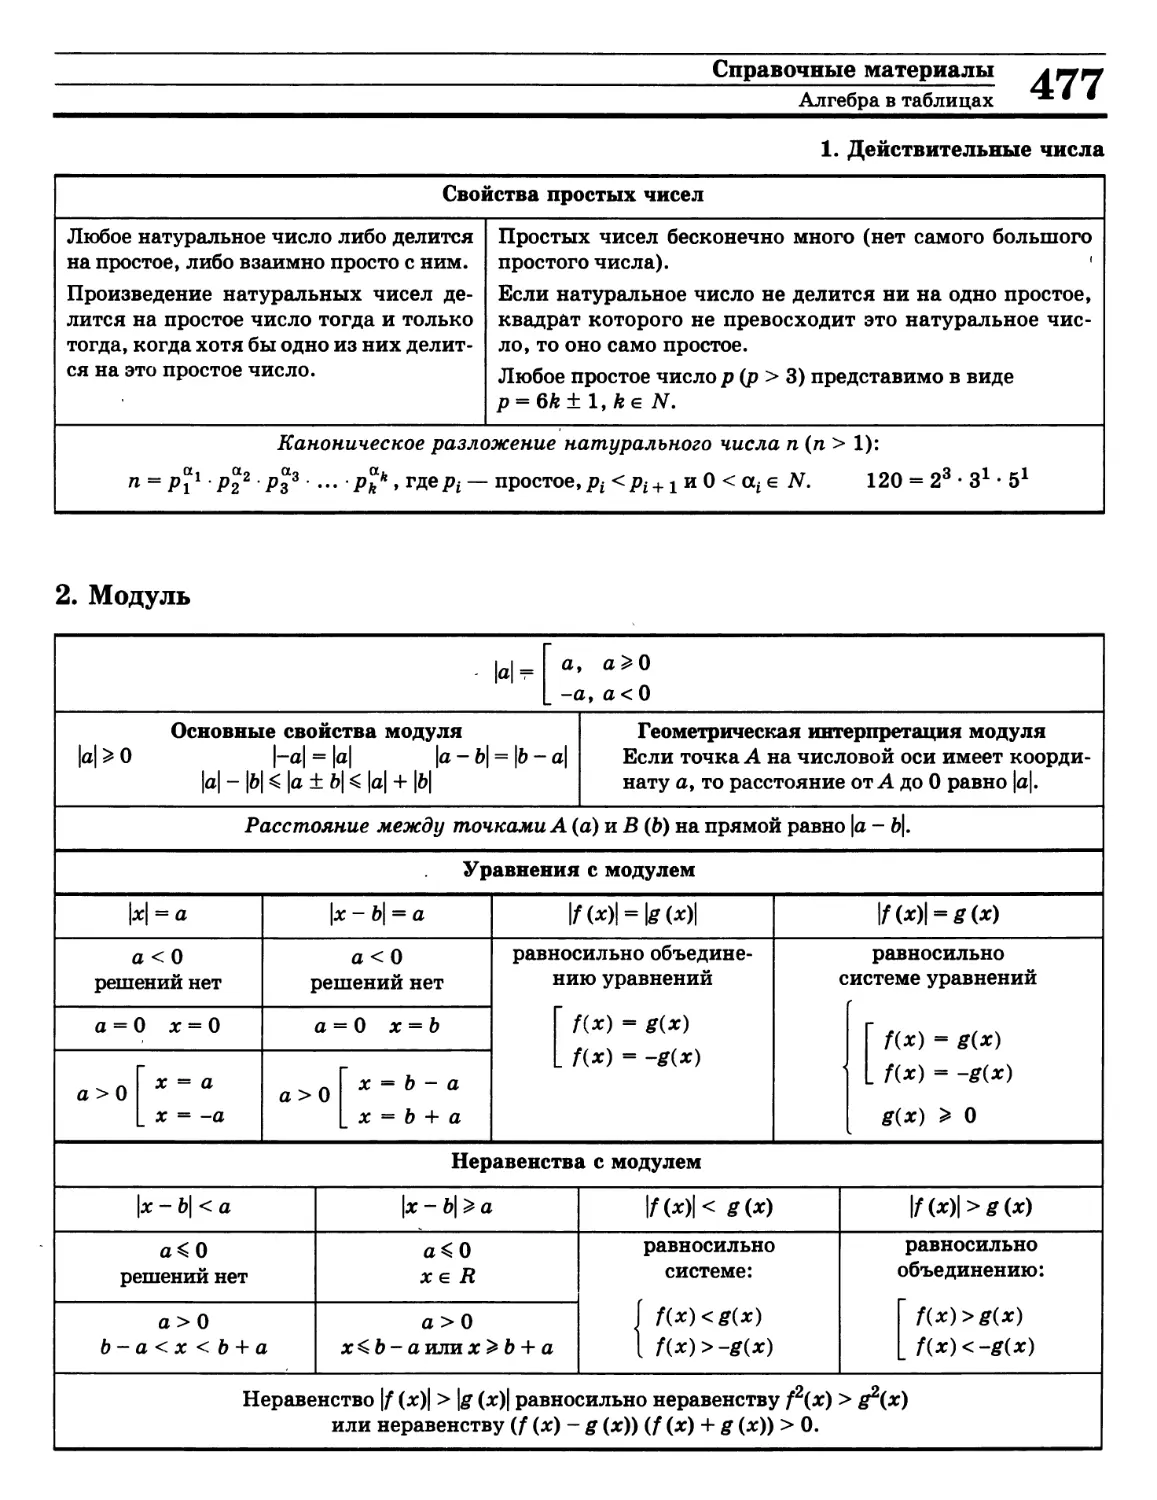 К
>>>
>>>
Свойства модуля
Свойства простых чисел
Уравнение с модулем